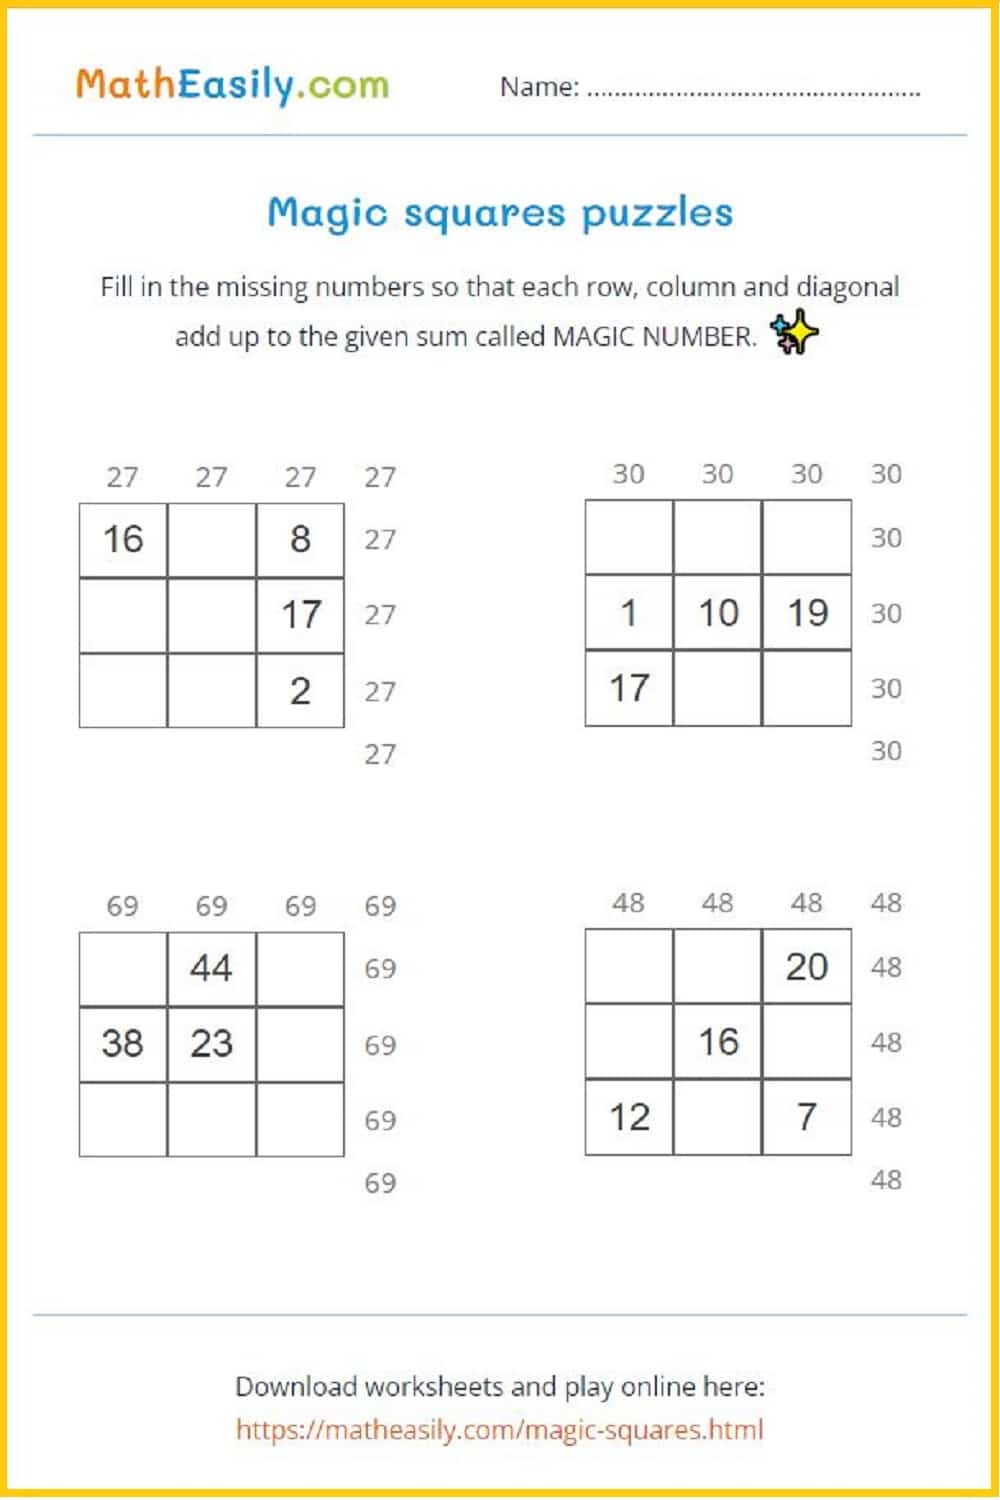 grade 4 math worksheets pdf free download. 
free printable math worksheets for 4rd graders. Free printable 4th Grade Math Worksheets PDF free download.